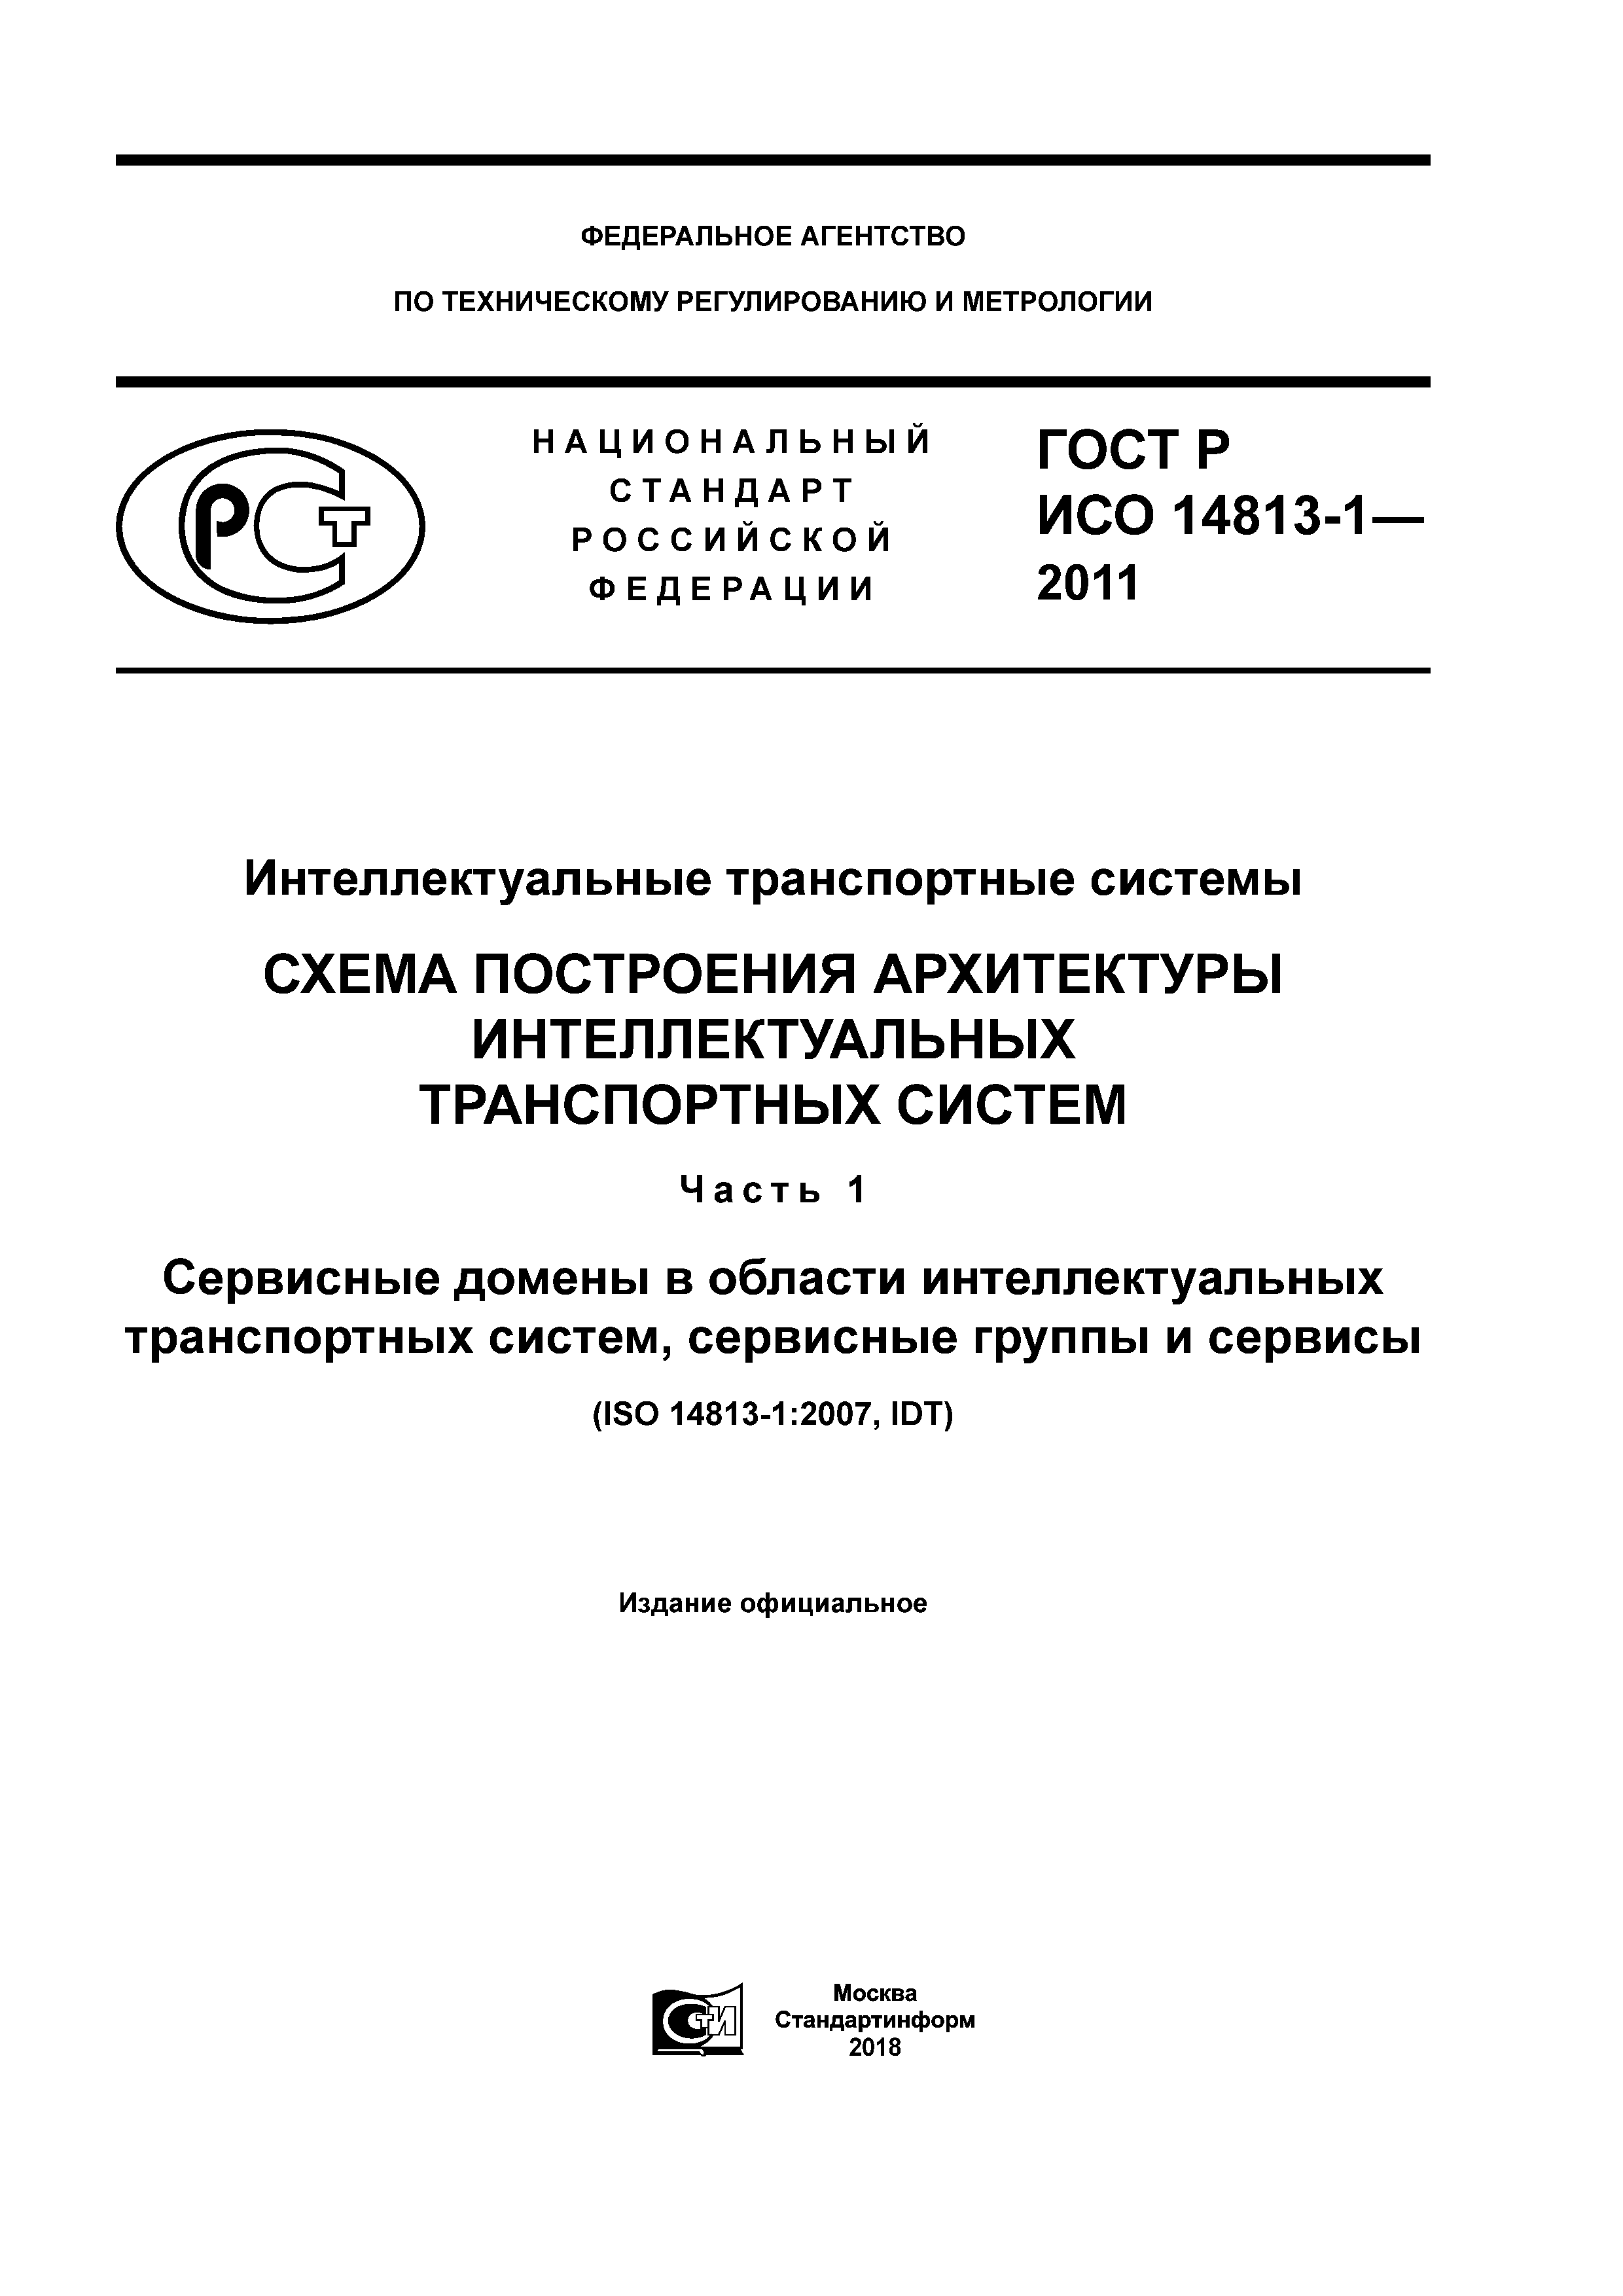 ГОСТ Р ИСО 14813-1-2011